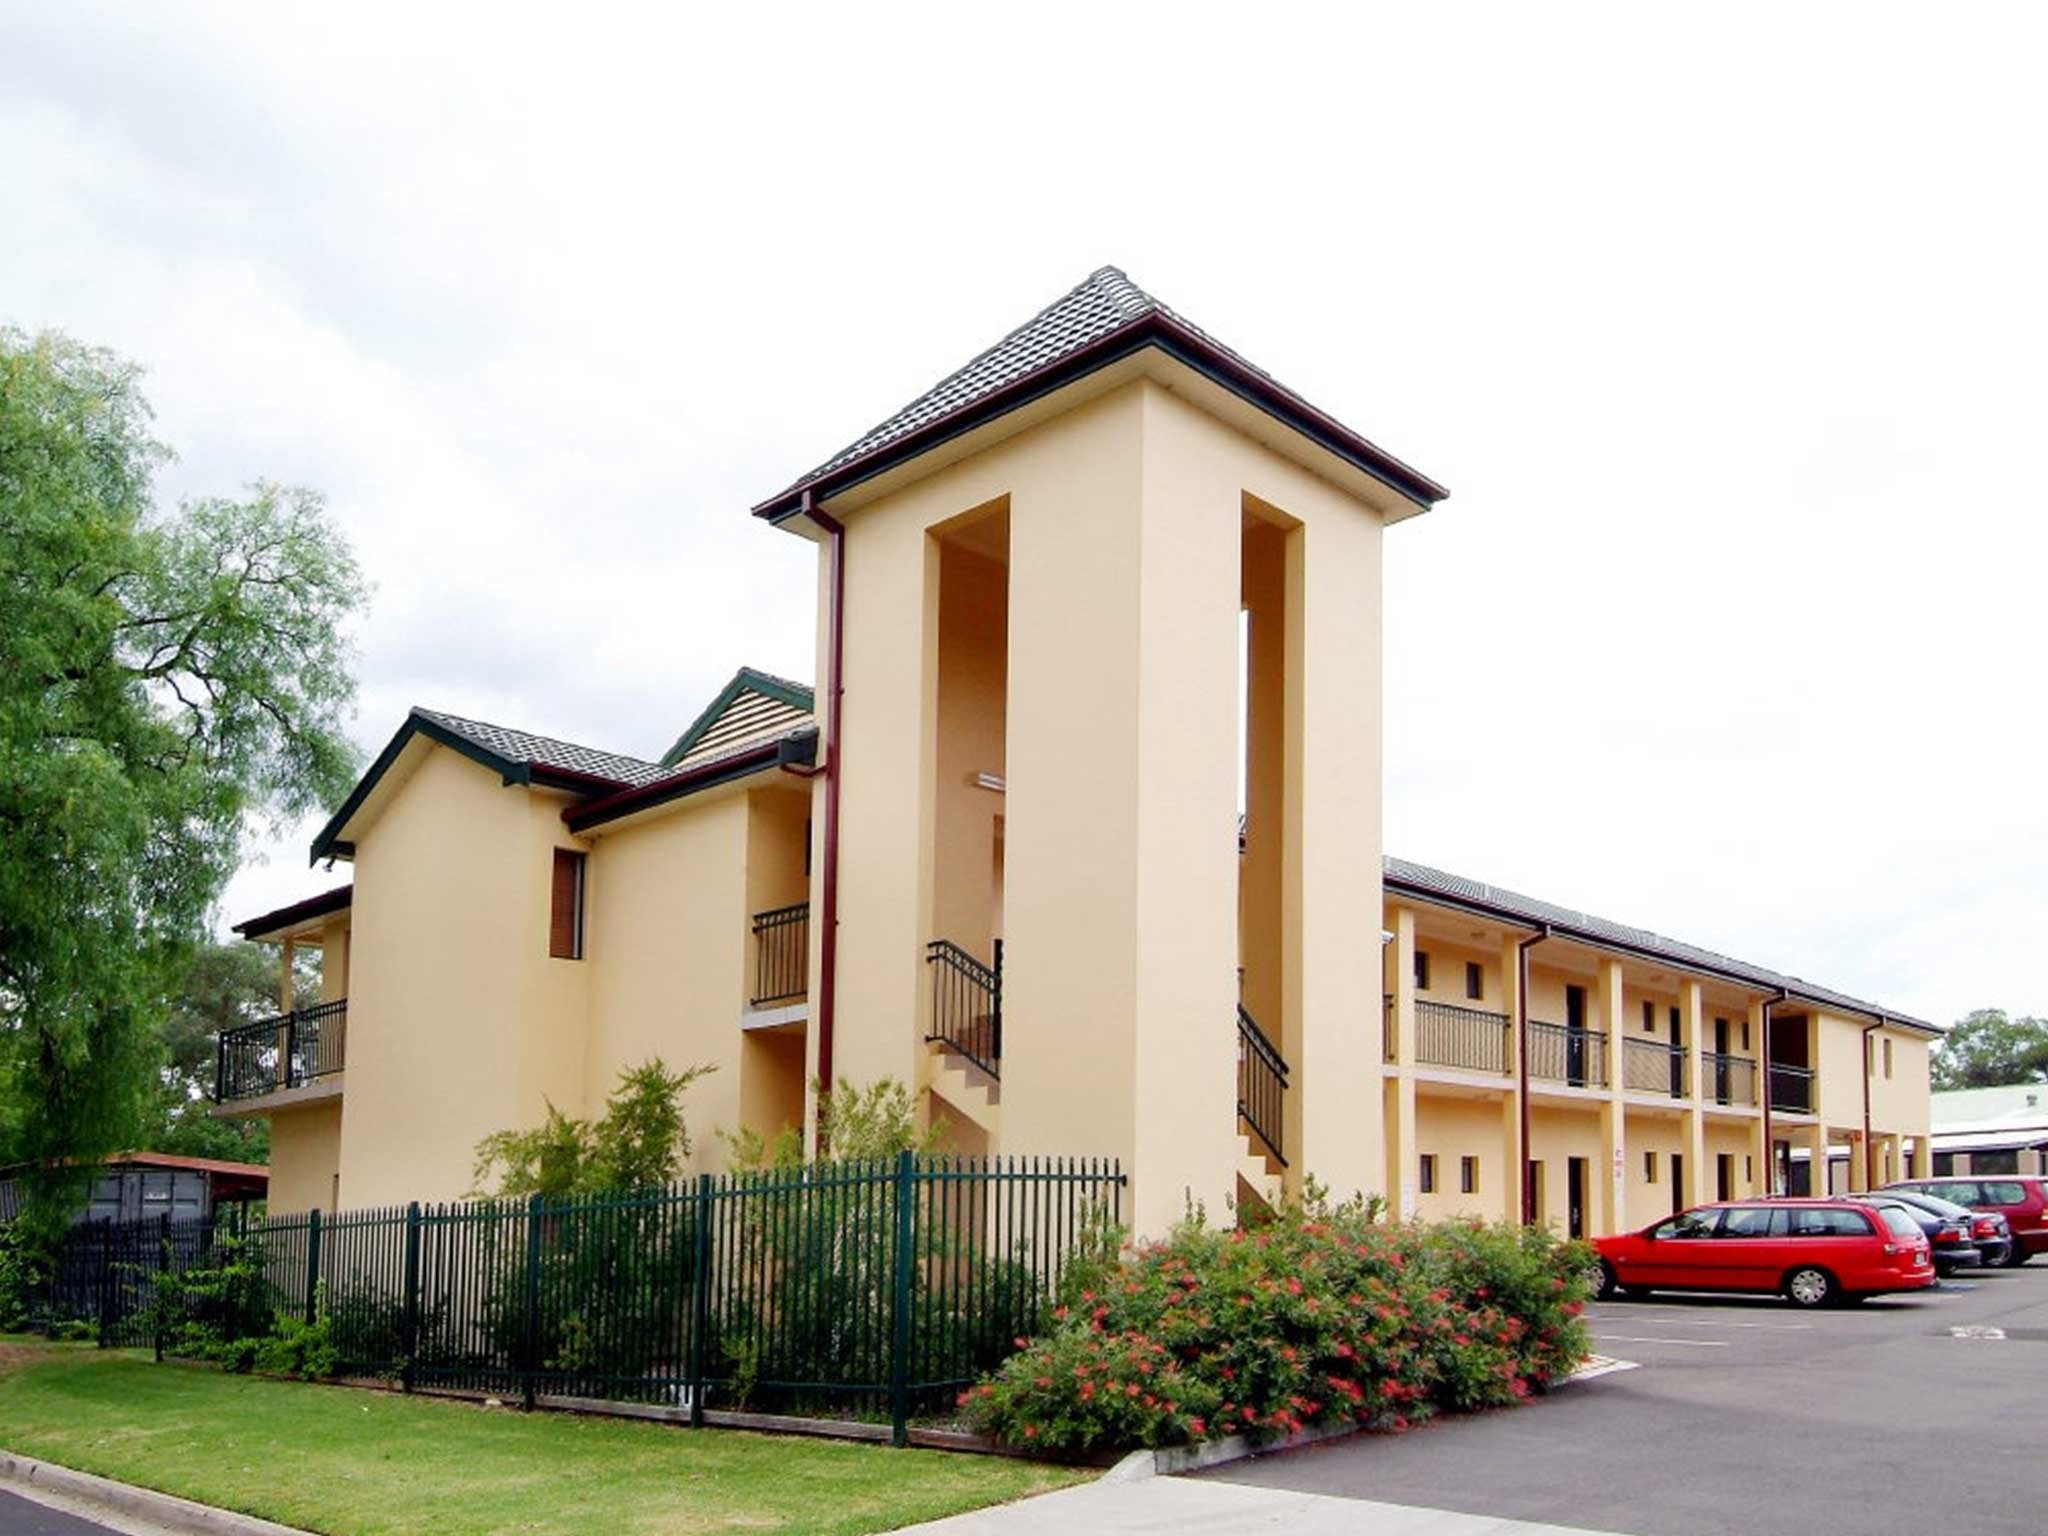 St Marys Park View Motel - Accommodation in Bendigo